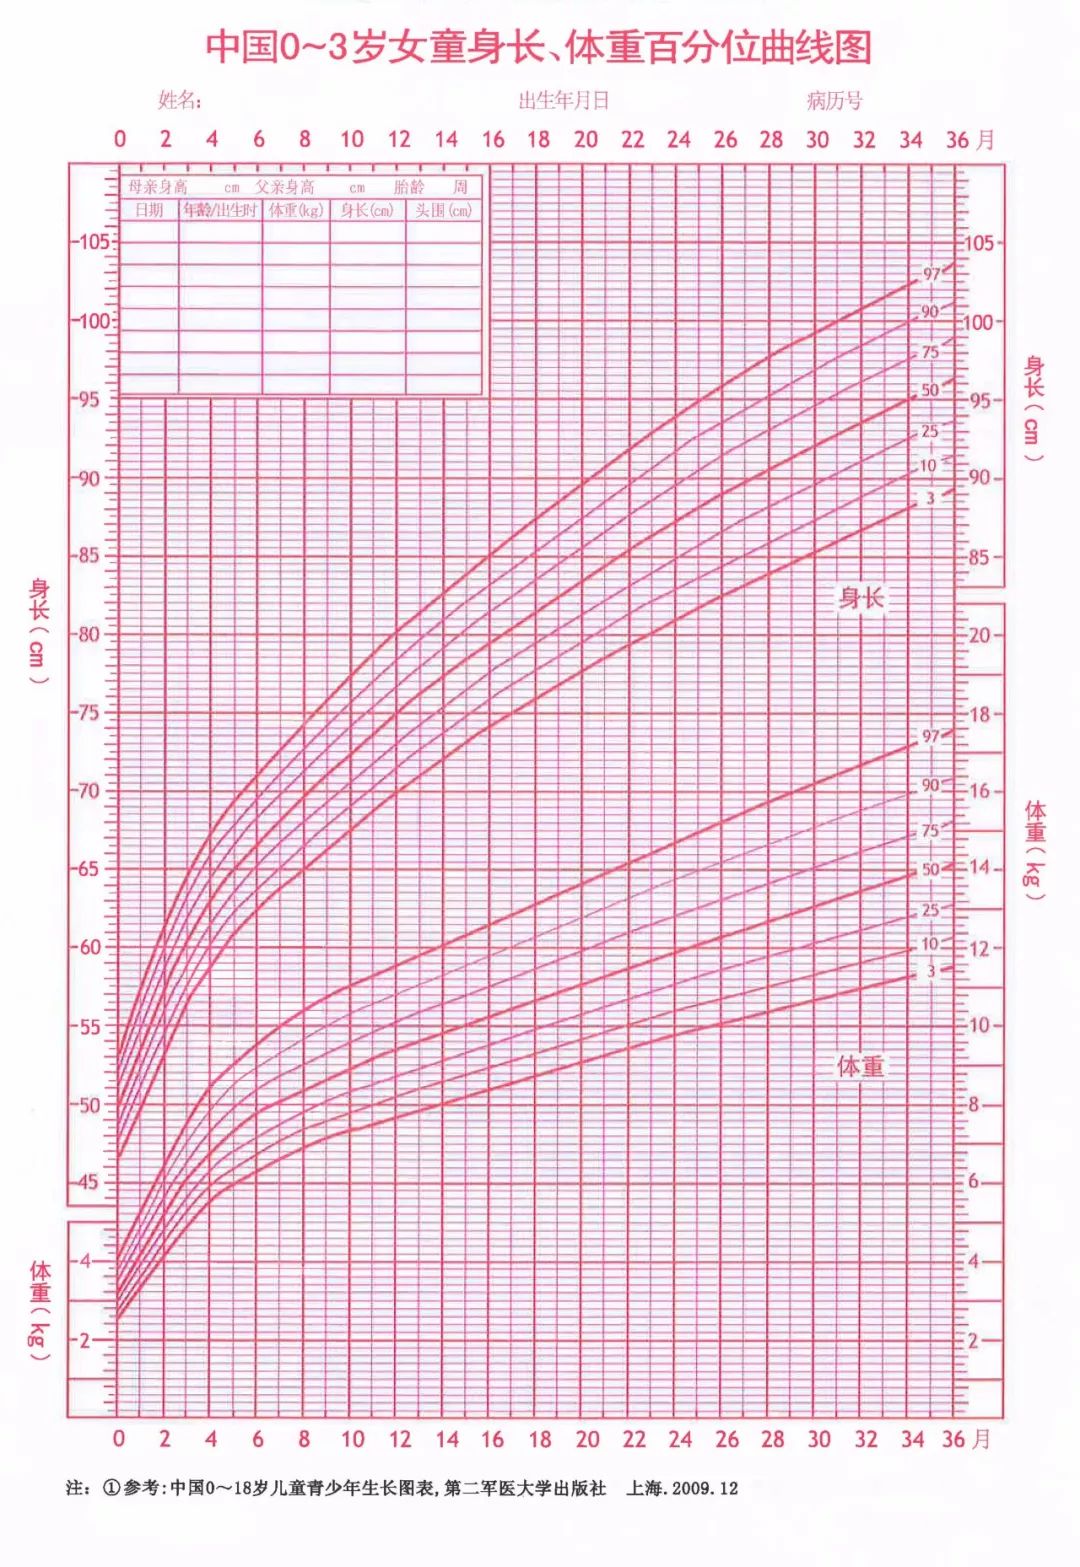 在曲线图中,如果孩子的身高在第三百分位以下,就算矮小,也就是100个同